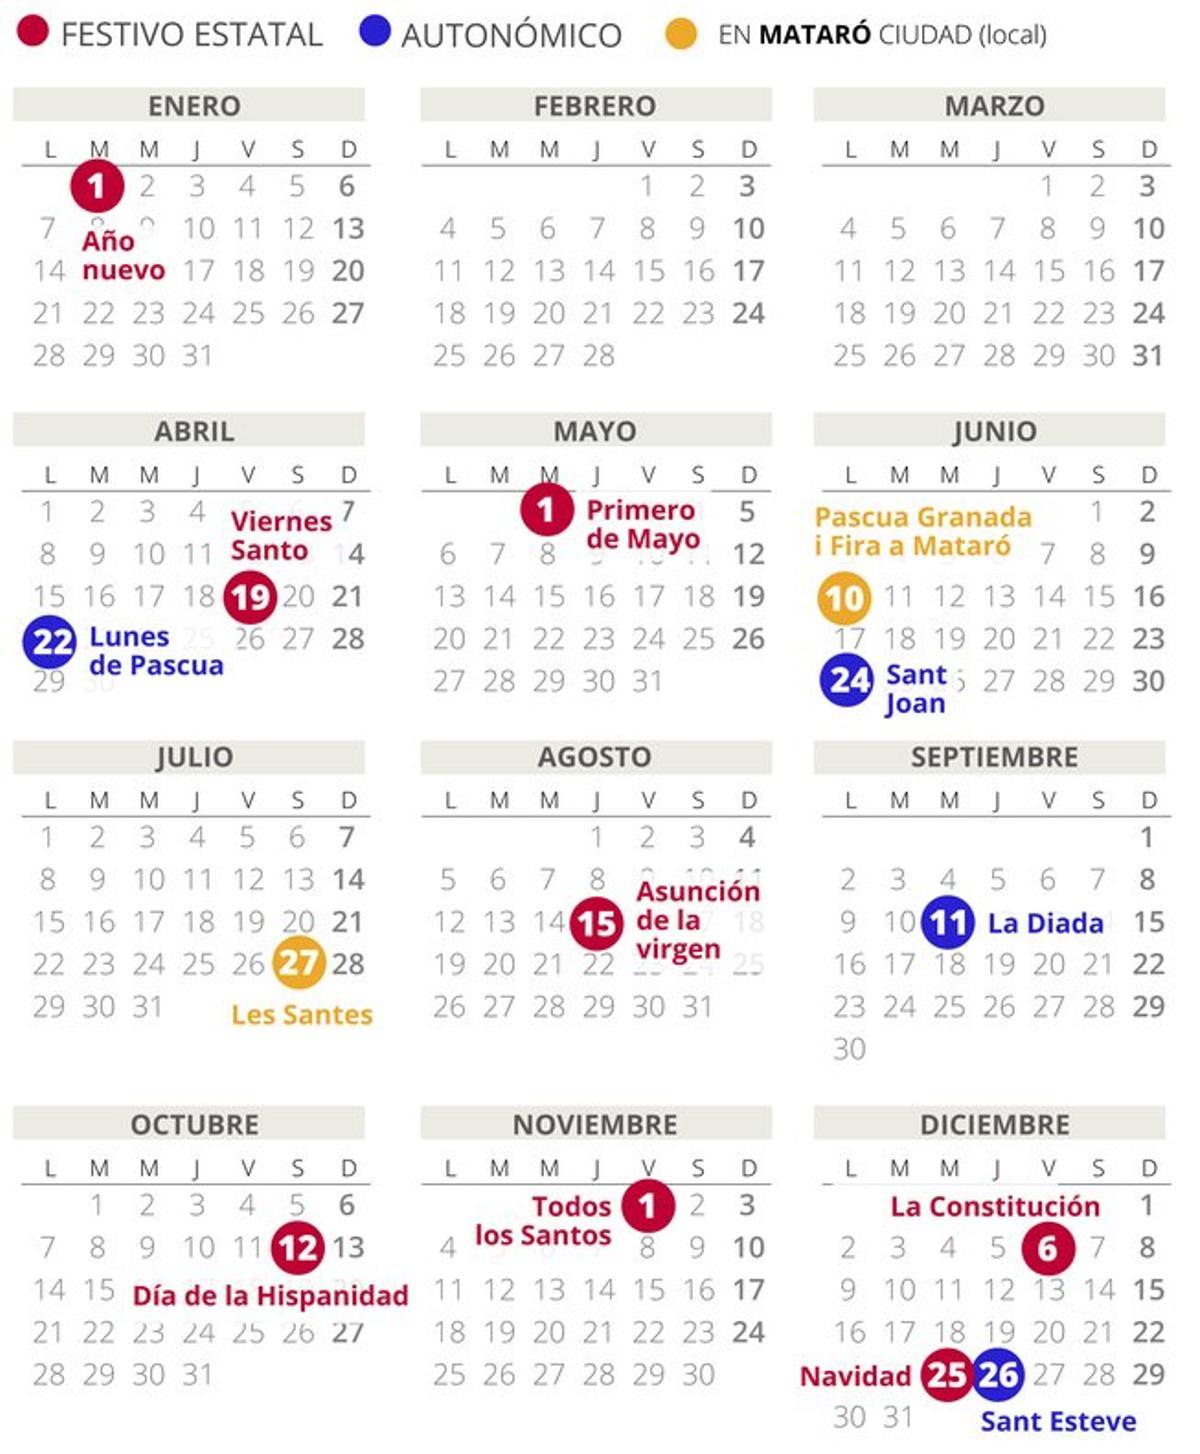 Calendario laboral de Mataró del 2019.